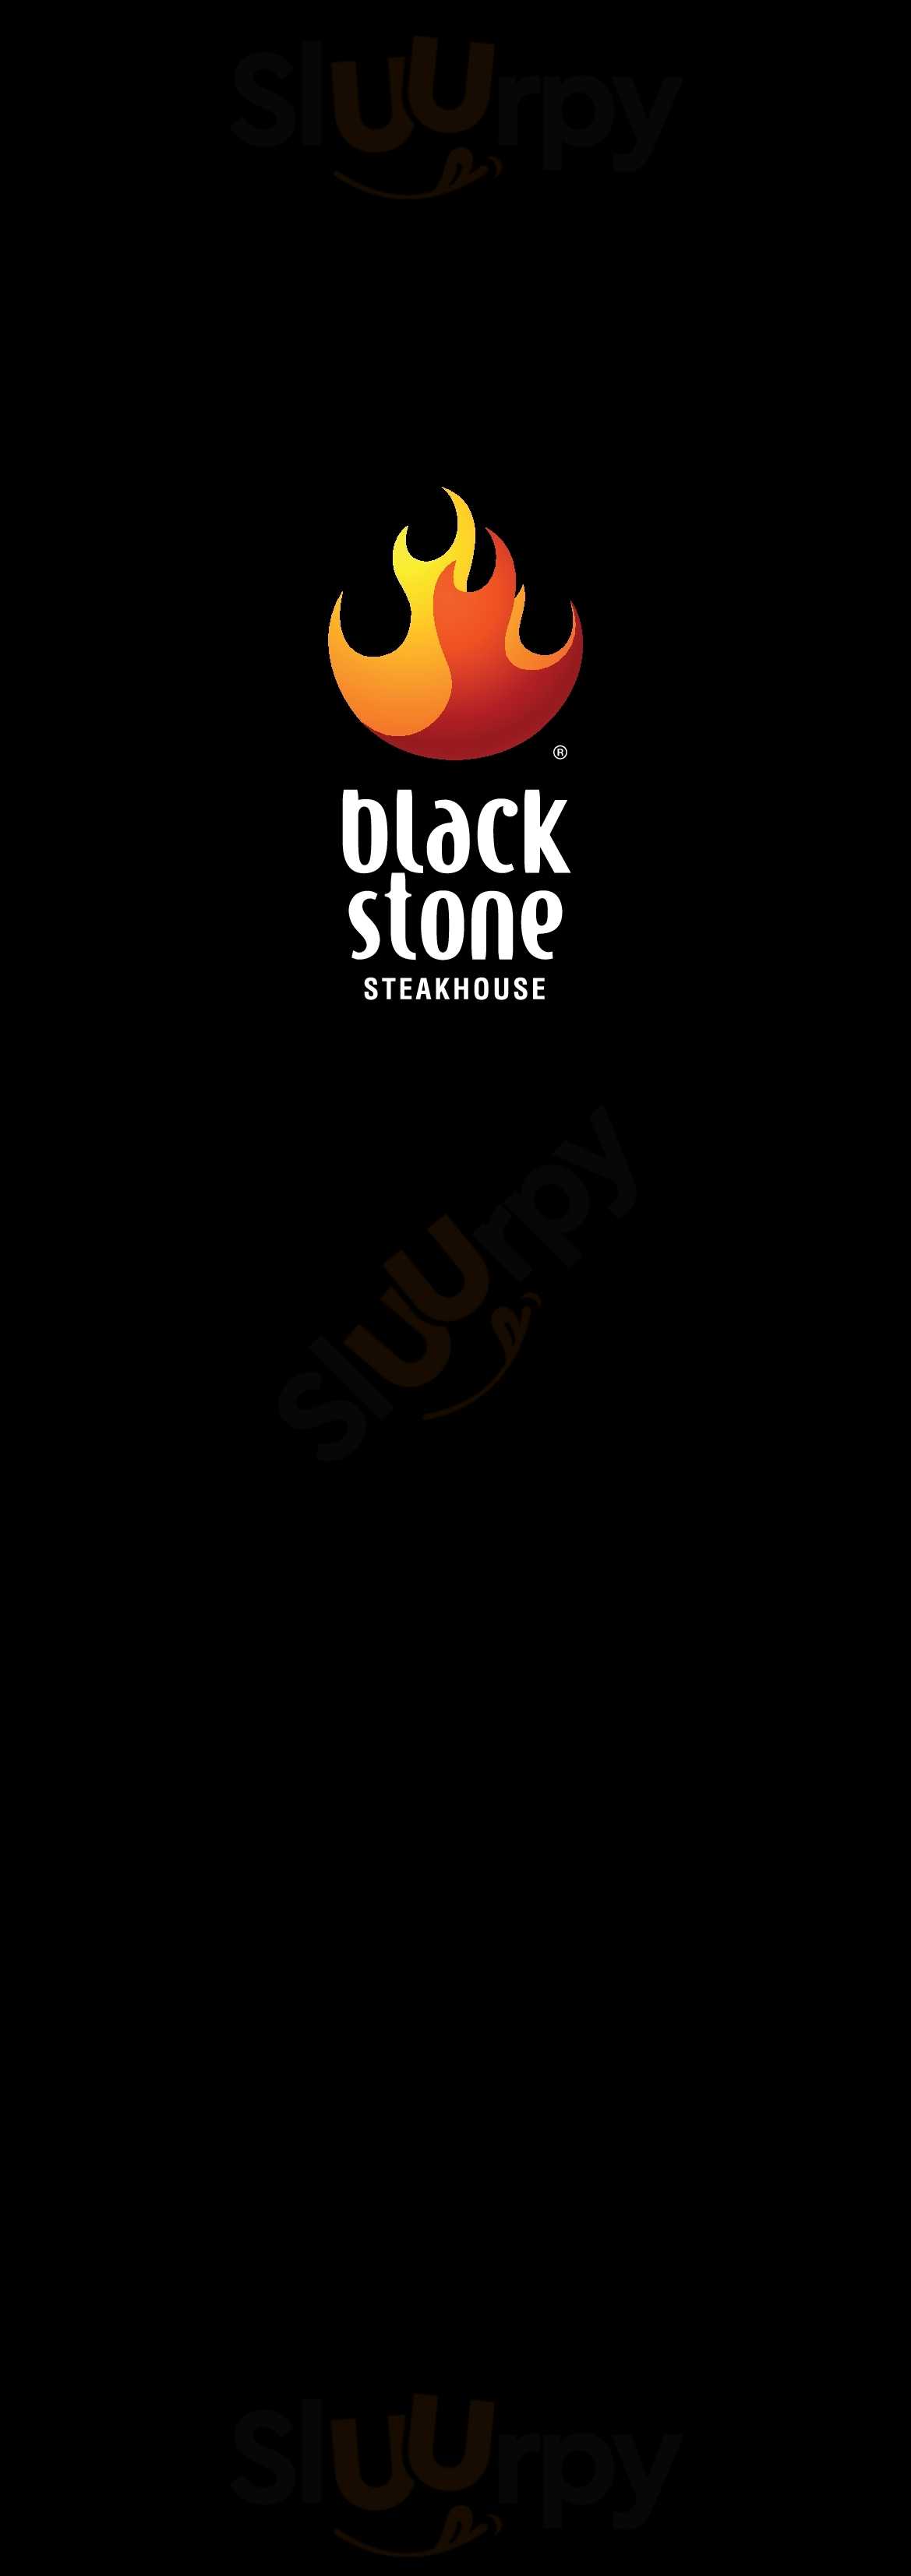 Blackstone Steakhouse Kungsbacka Kungsbacka Menu - 1